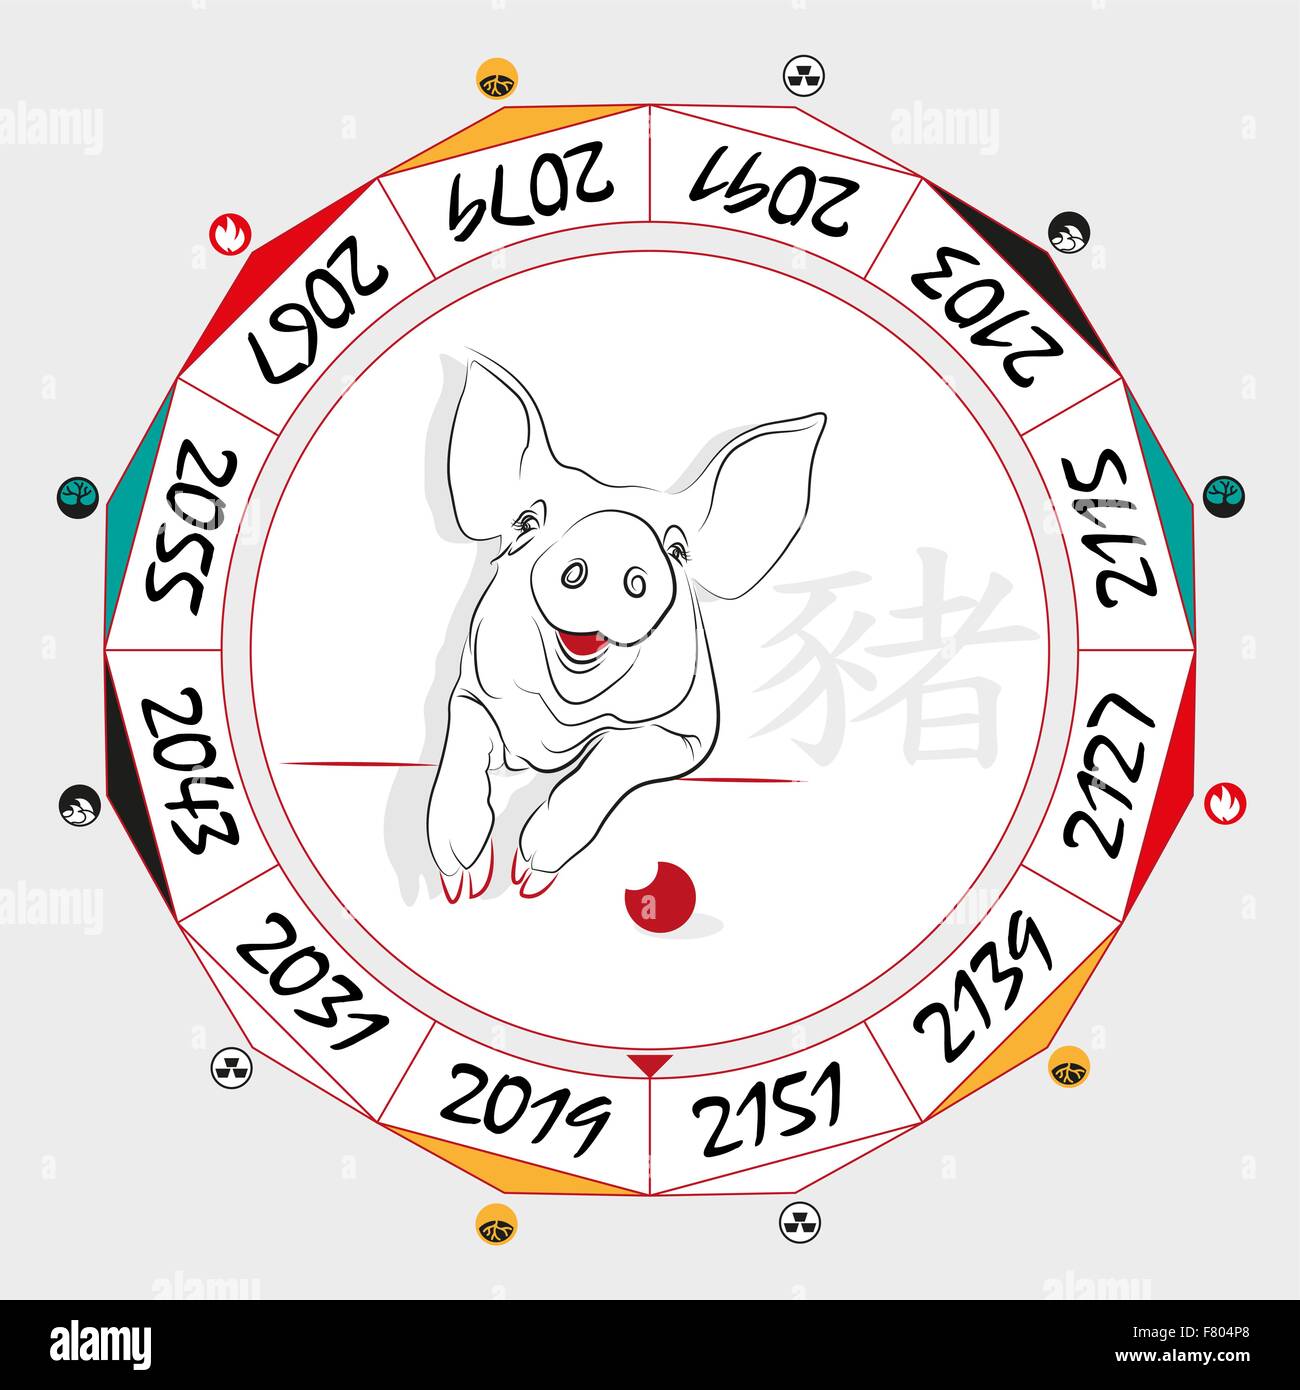 Signe zodiacal chinois cochon dans une disposition circulaire des données. Le hiéroglyphe sur le mot est représenté - "digitale". Vector illustration. Illustration de Vecteur